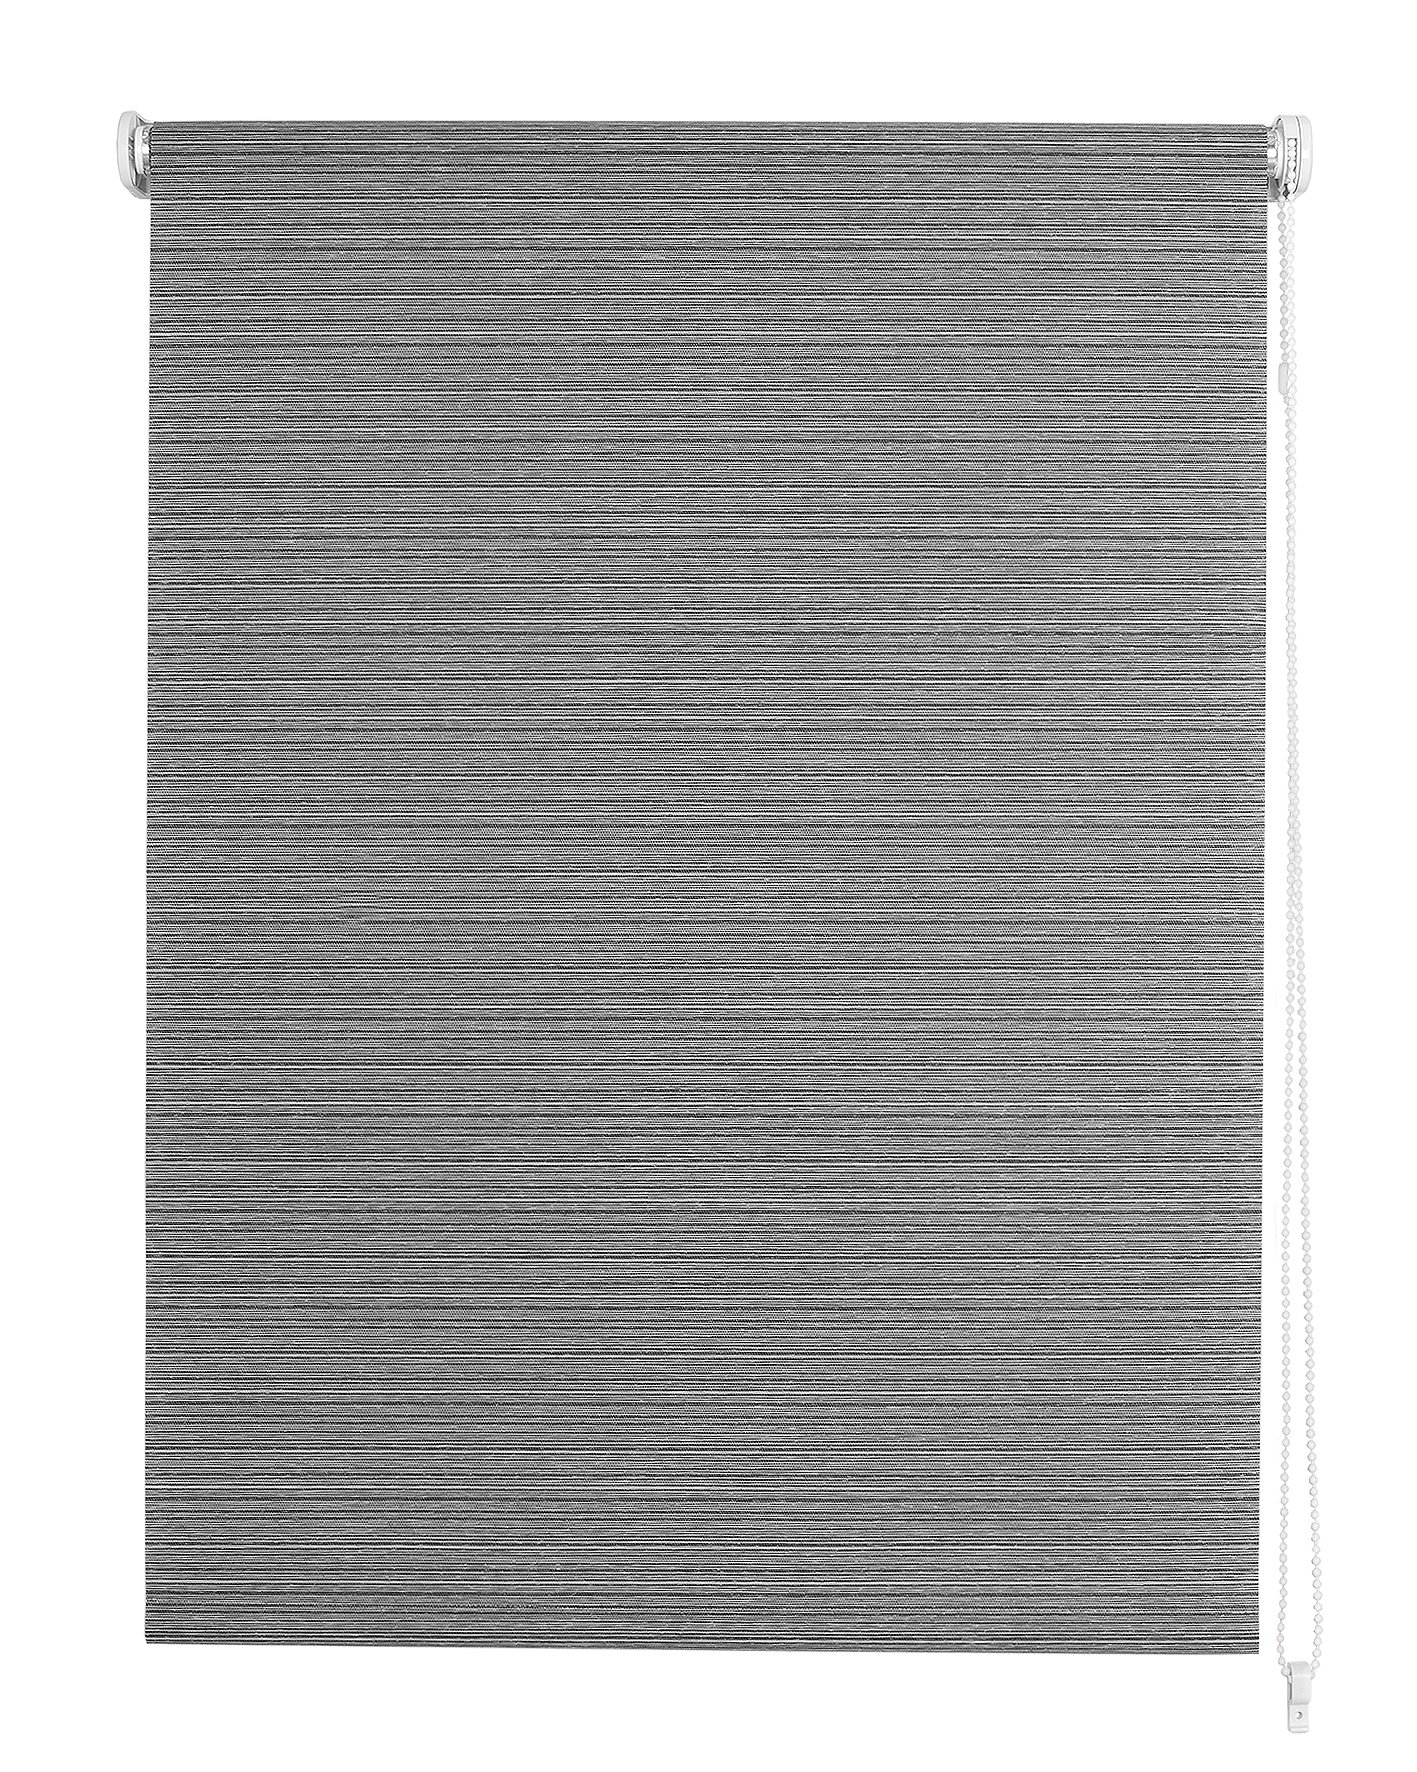 Klasikinė ritininė užuolaida VIENNA, pilkos sp., 60 x 170 cm, 100 % poliesteris - 2